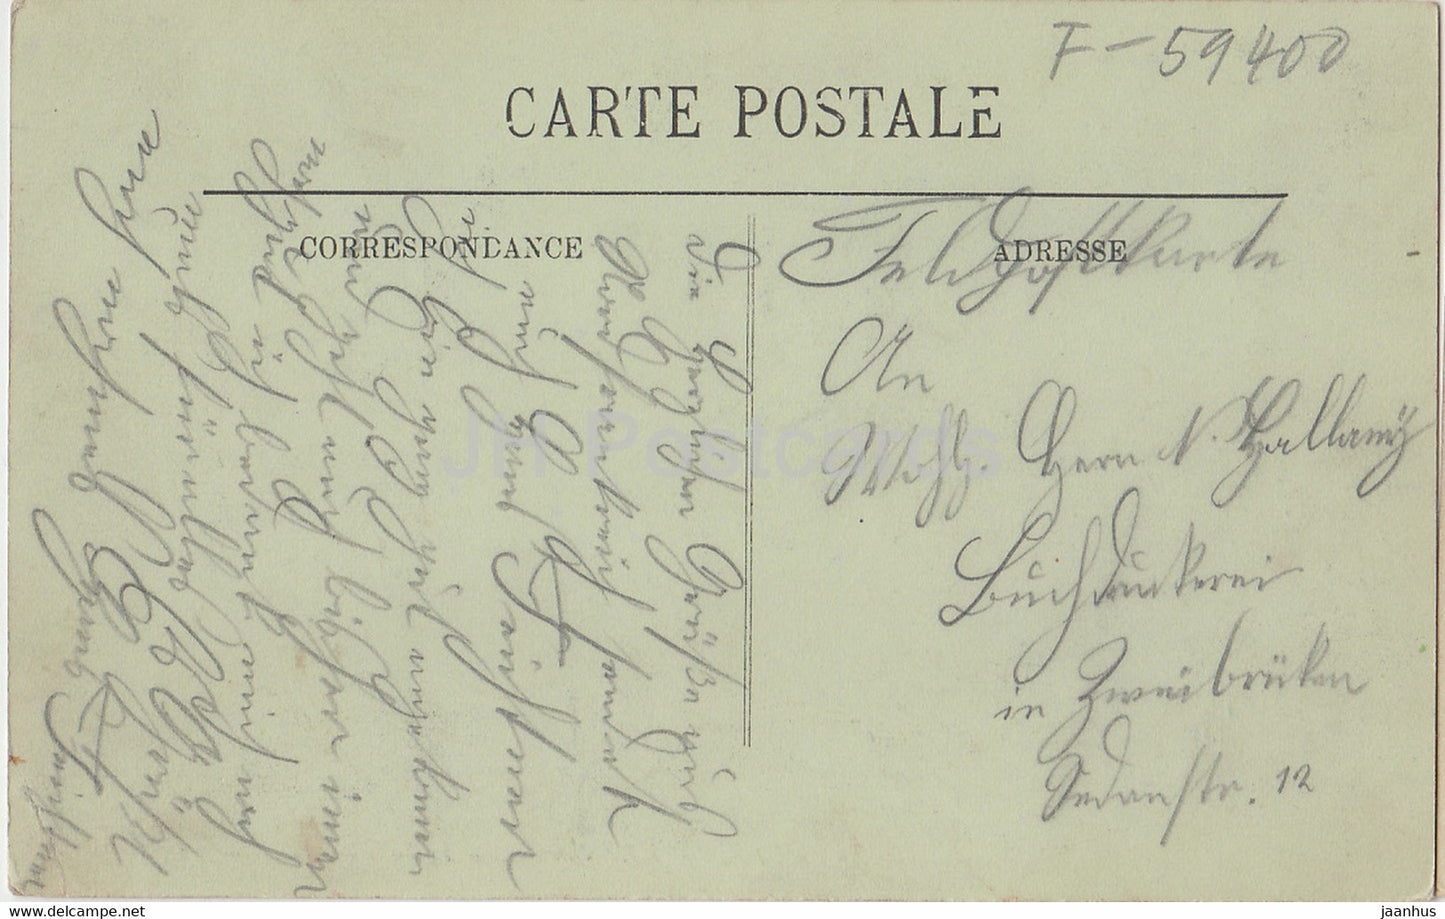 Cambrai - Hôtel de Ville - La Salle des Fêtes - 89 - carte postale ancienne - France - oblitéré